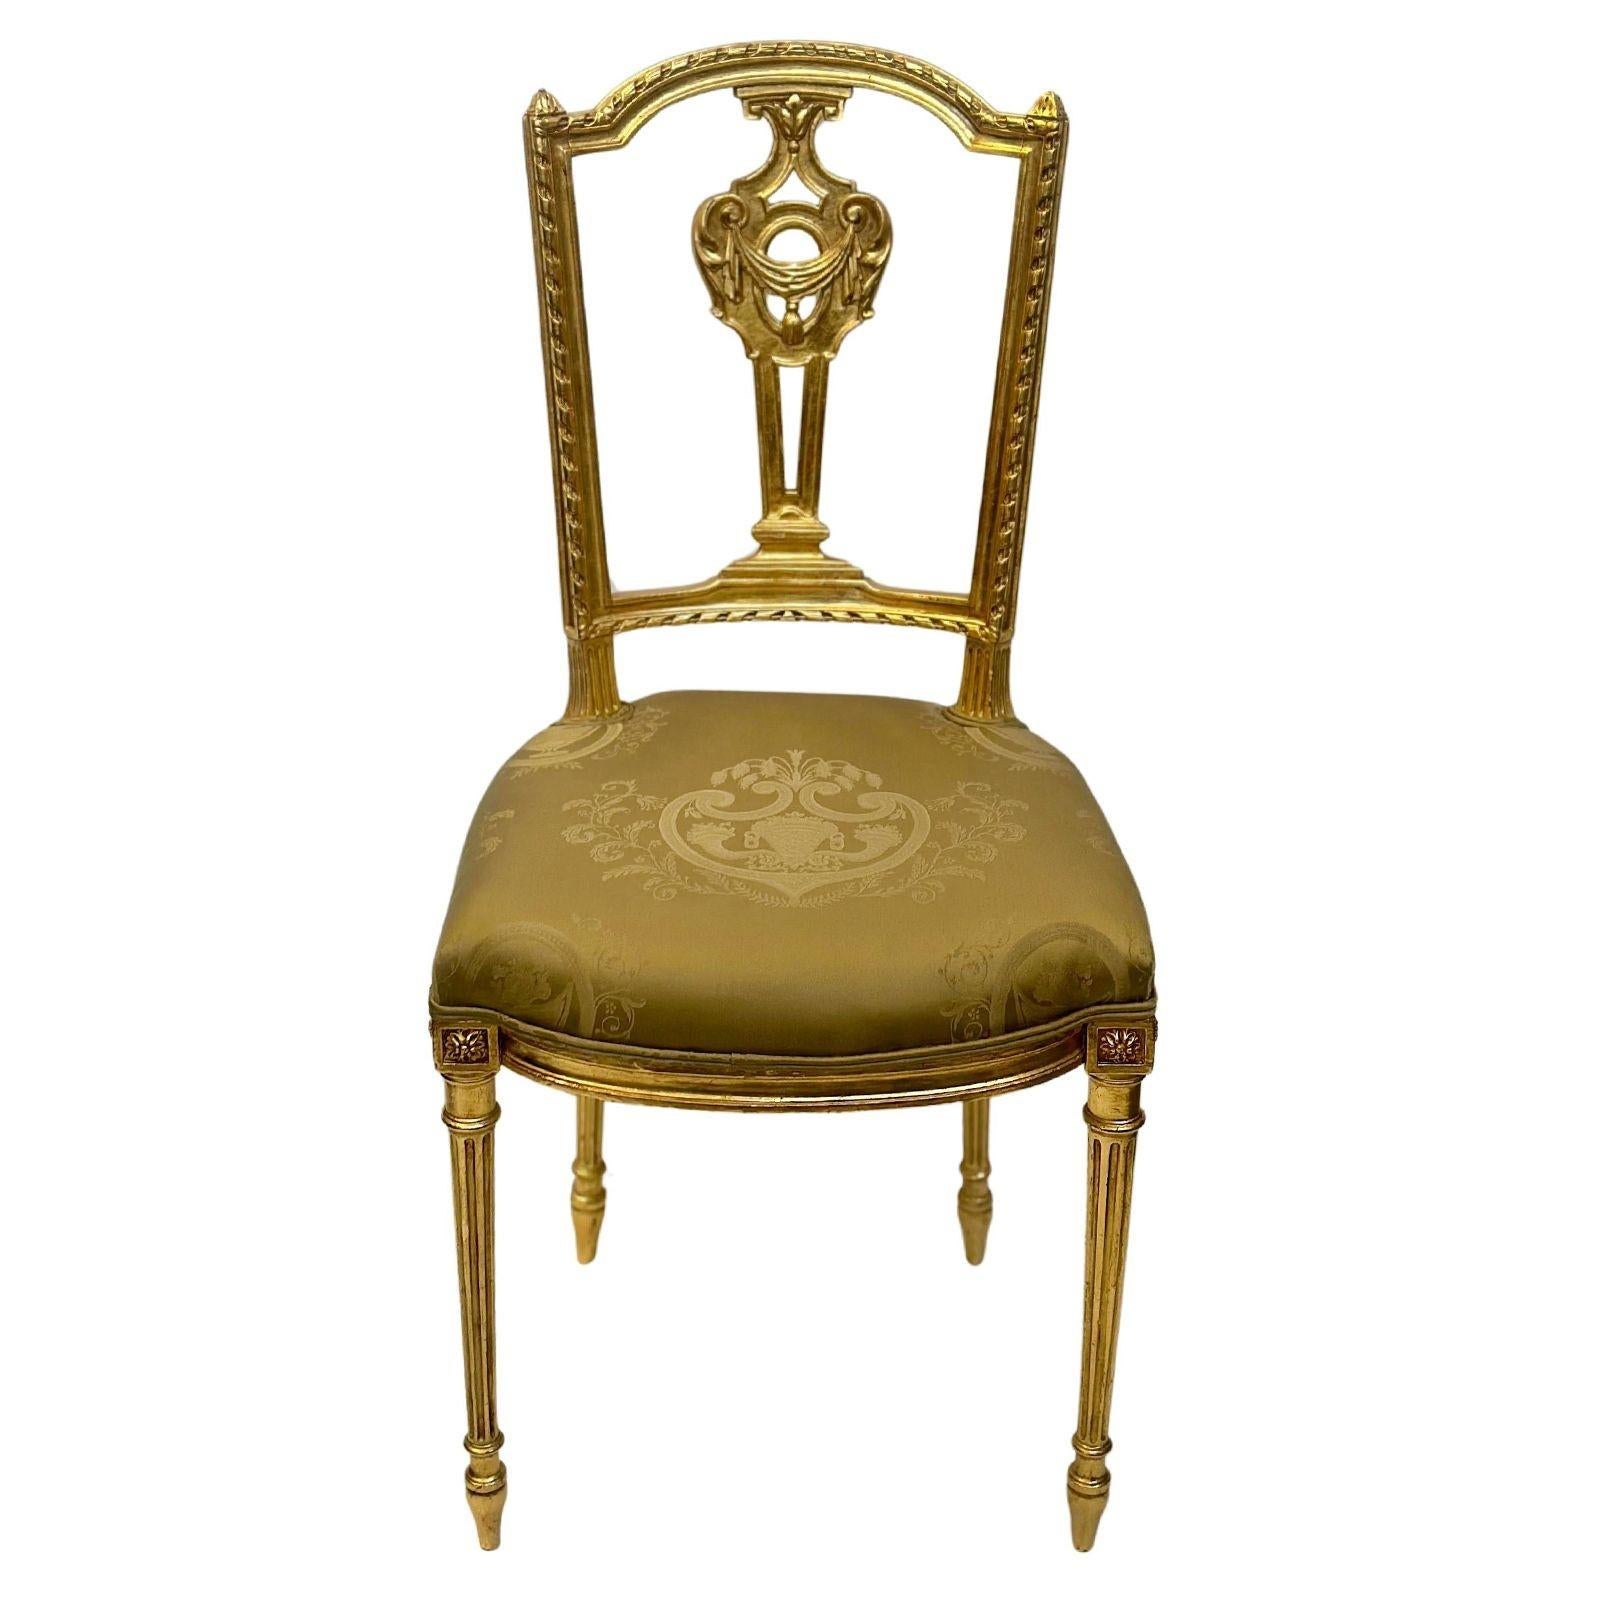 Ein Paar französischer Stühle aus geschnitztem Goldholz, gepolstert mit einem schönen olivfarbenen Stoff und goldenen Details. Die olivfarbene Polsterung wirkt warm und einladend und ergänzt die goldfarbenen Akzente wunderbar.
Diese um 1910 in